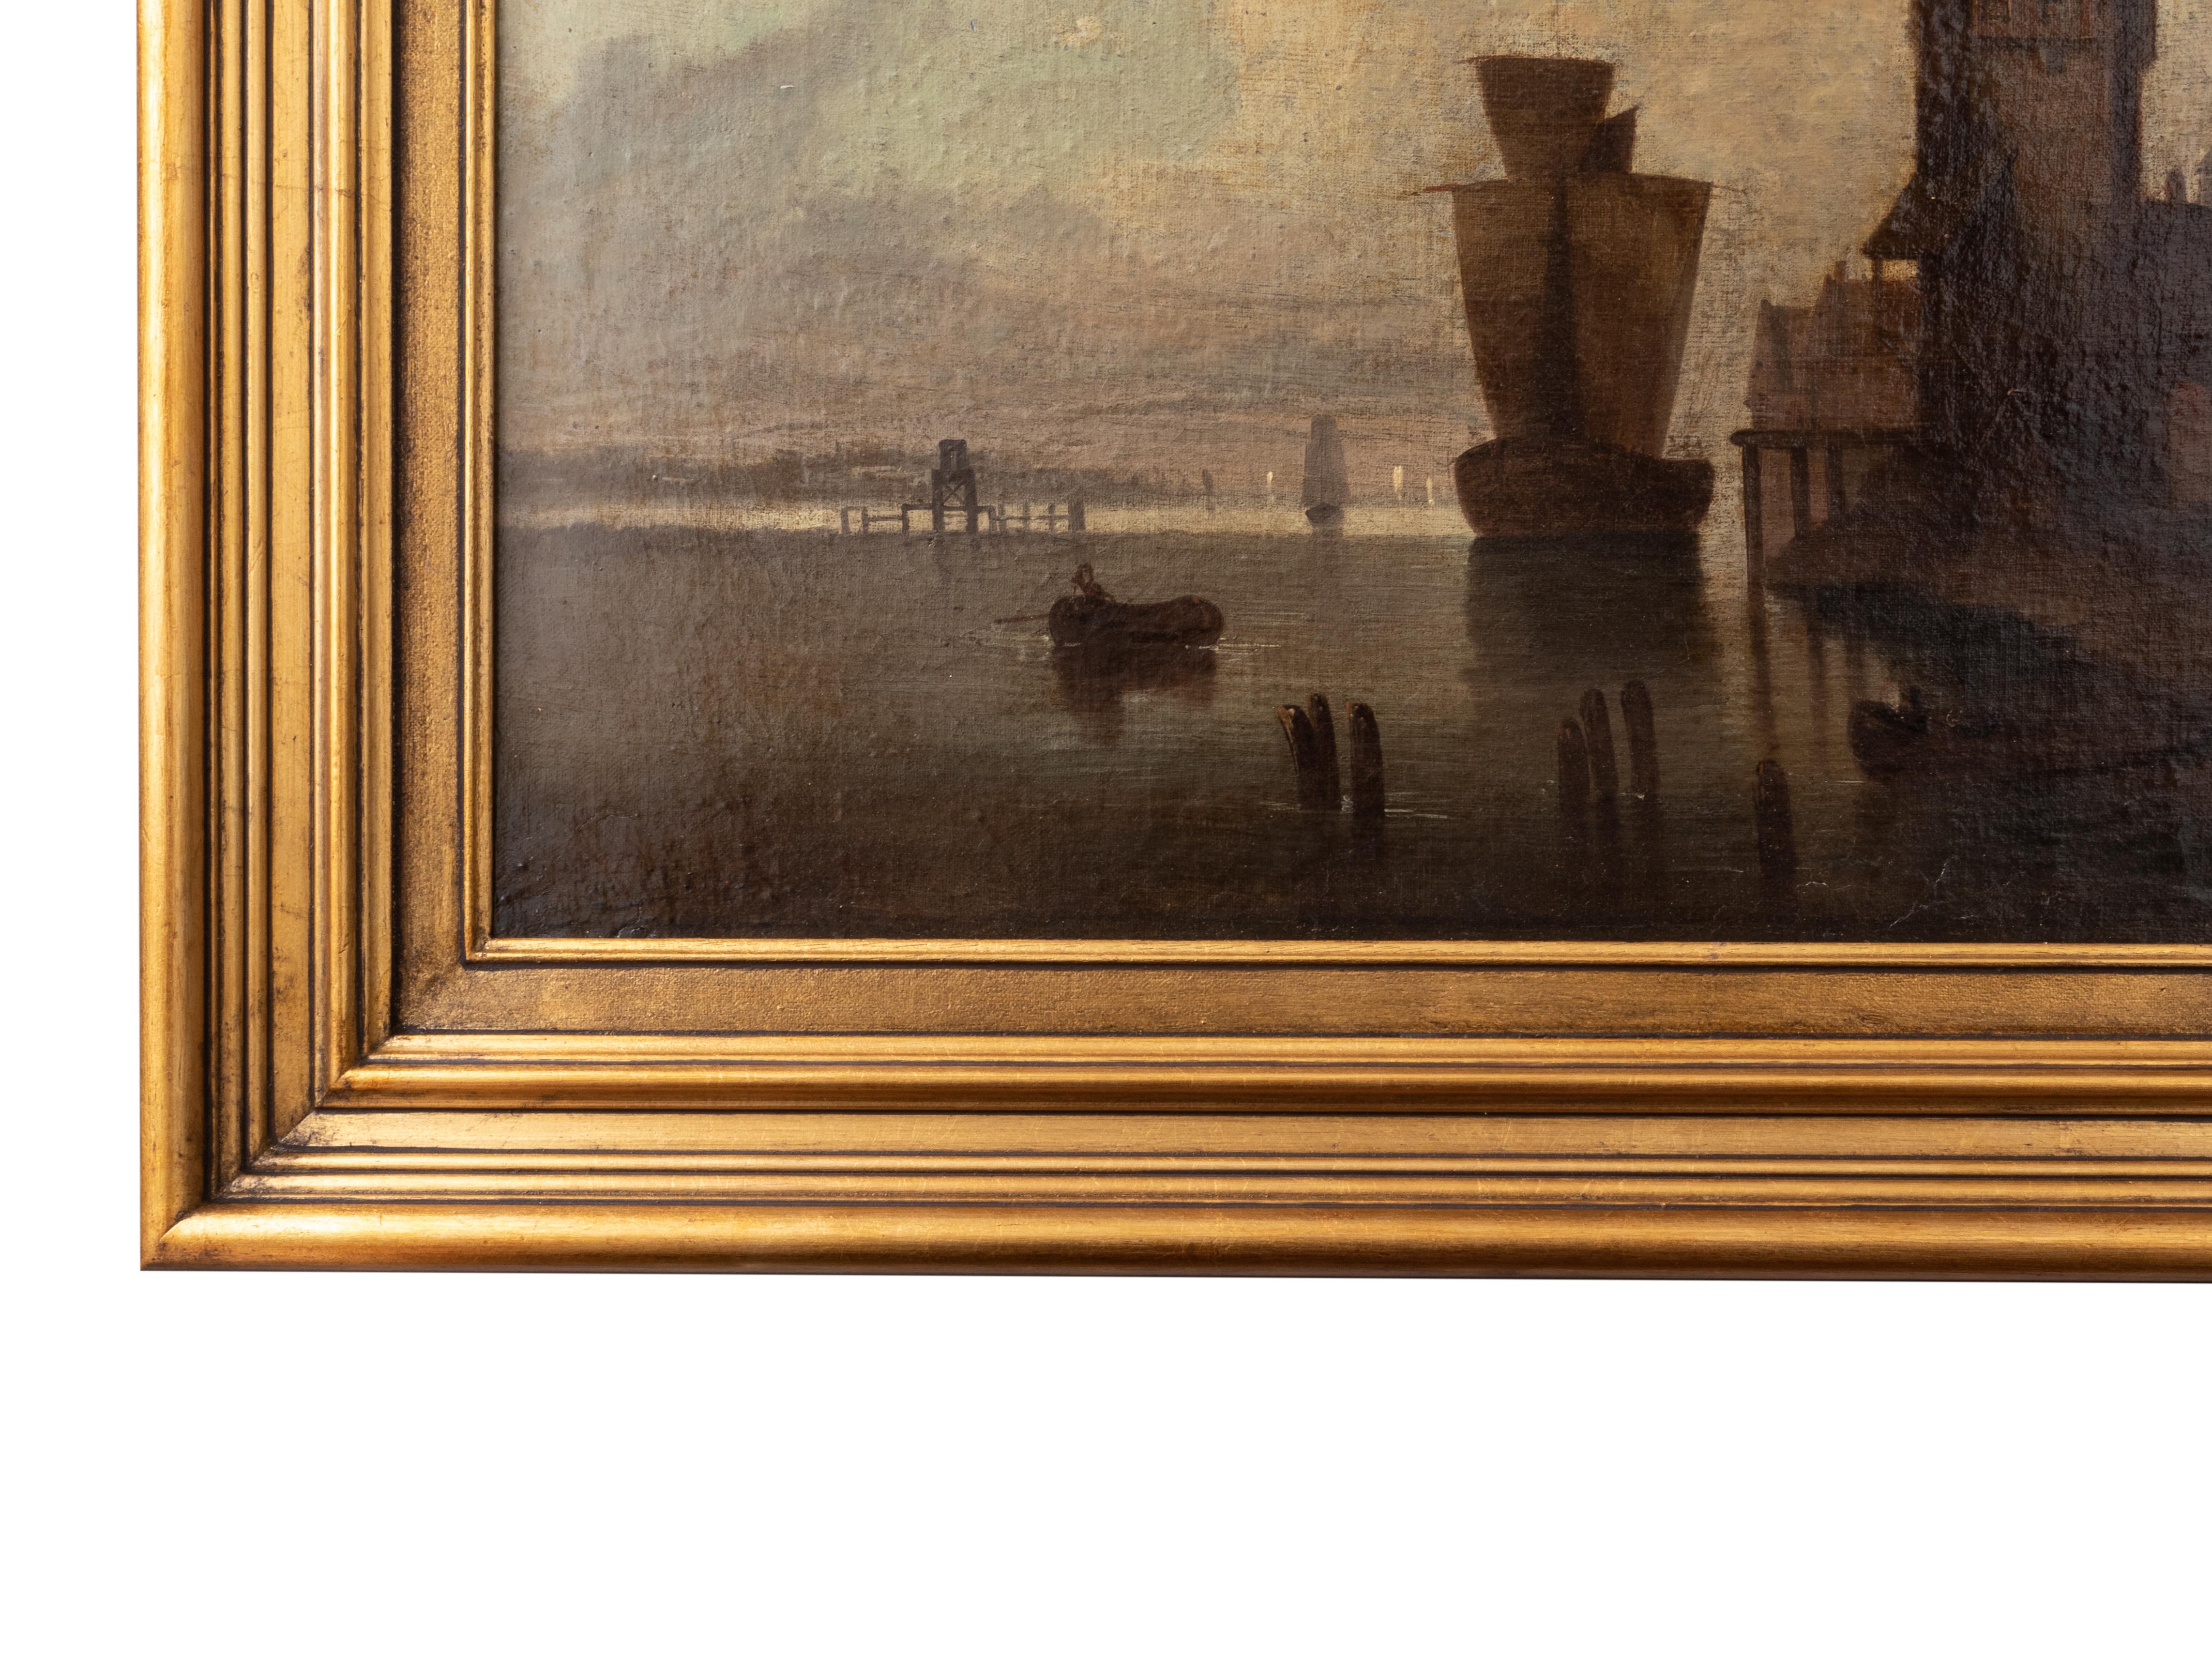 Landschaftsgemälde eines holländischen Hafens in der Morgendämmerung mit einem Karavellensegel und einem Boot im Hintergrund mit flämischen Gebäuden, in Sfumato-Technik, datiert '1879' und signiert 'Roudil'.
Rahmen 86,5 x 60 cm 
Leinwand 68 x 42,5